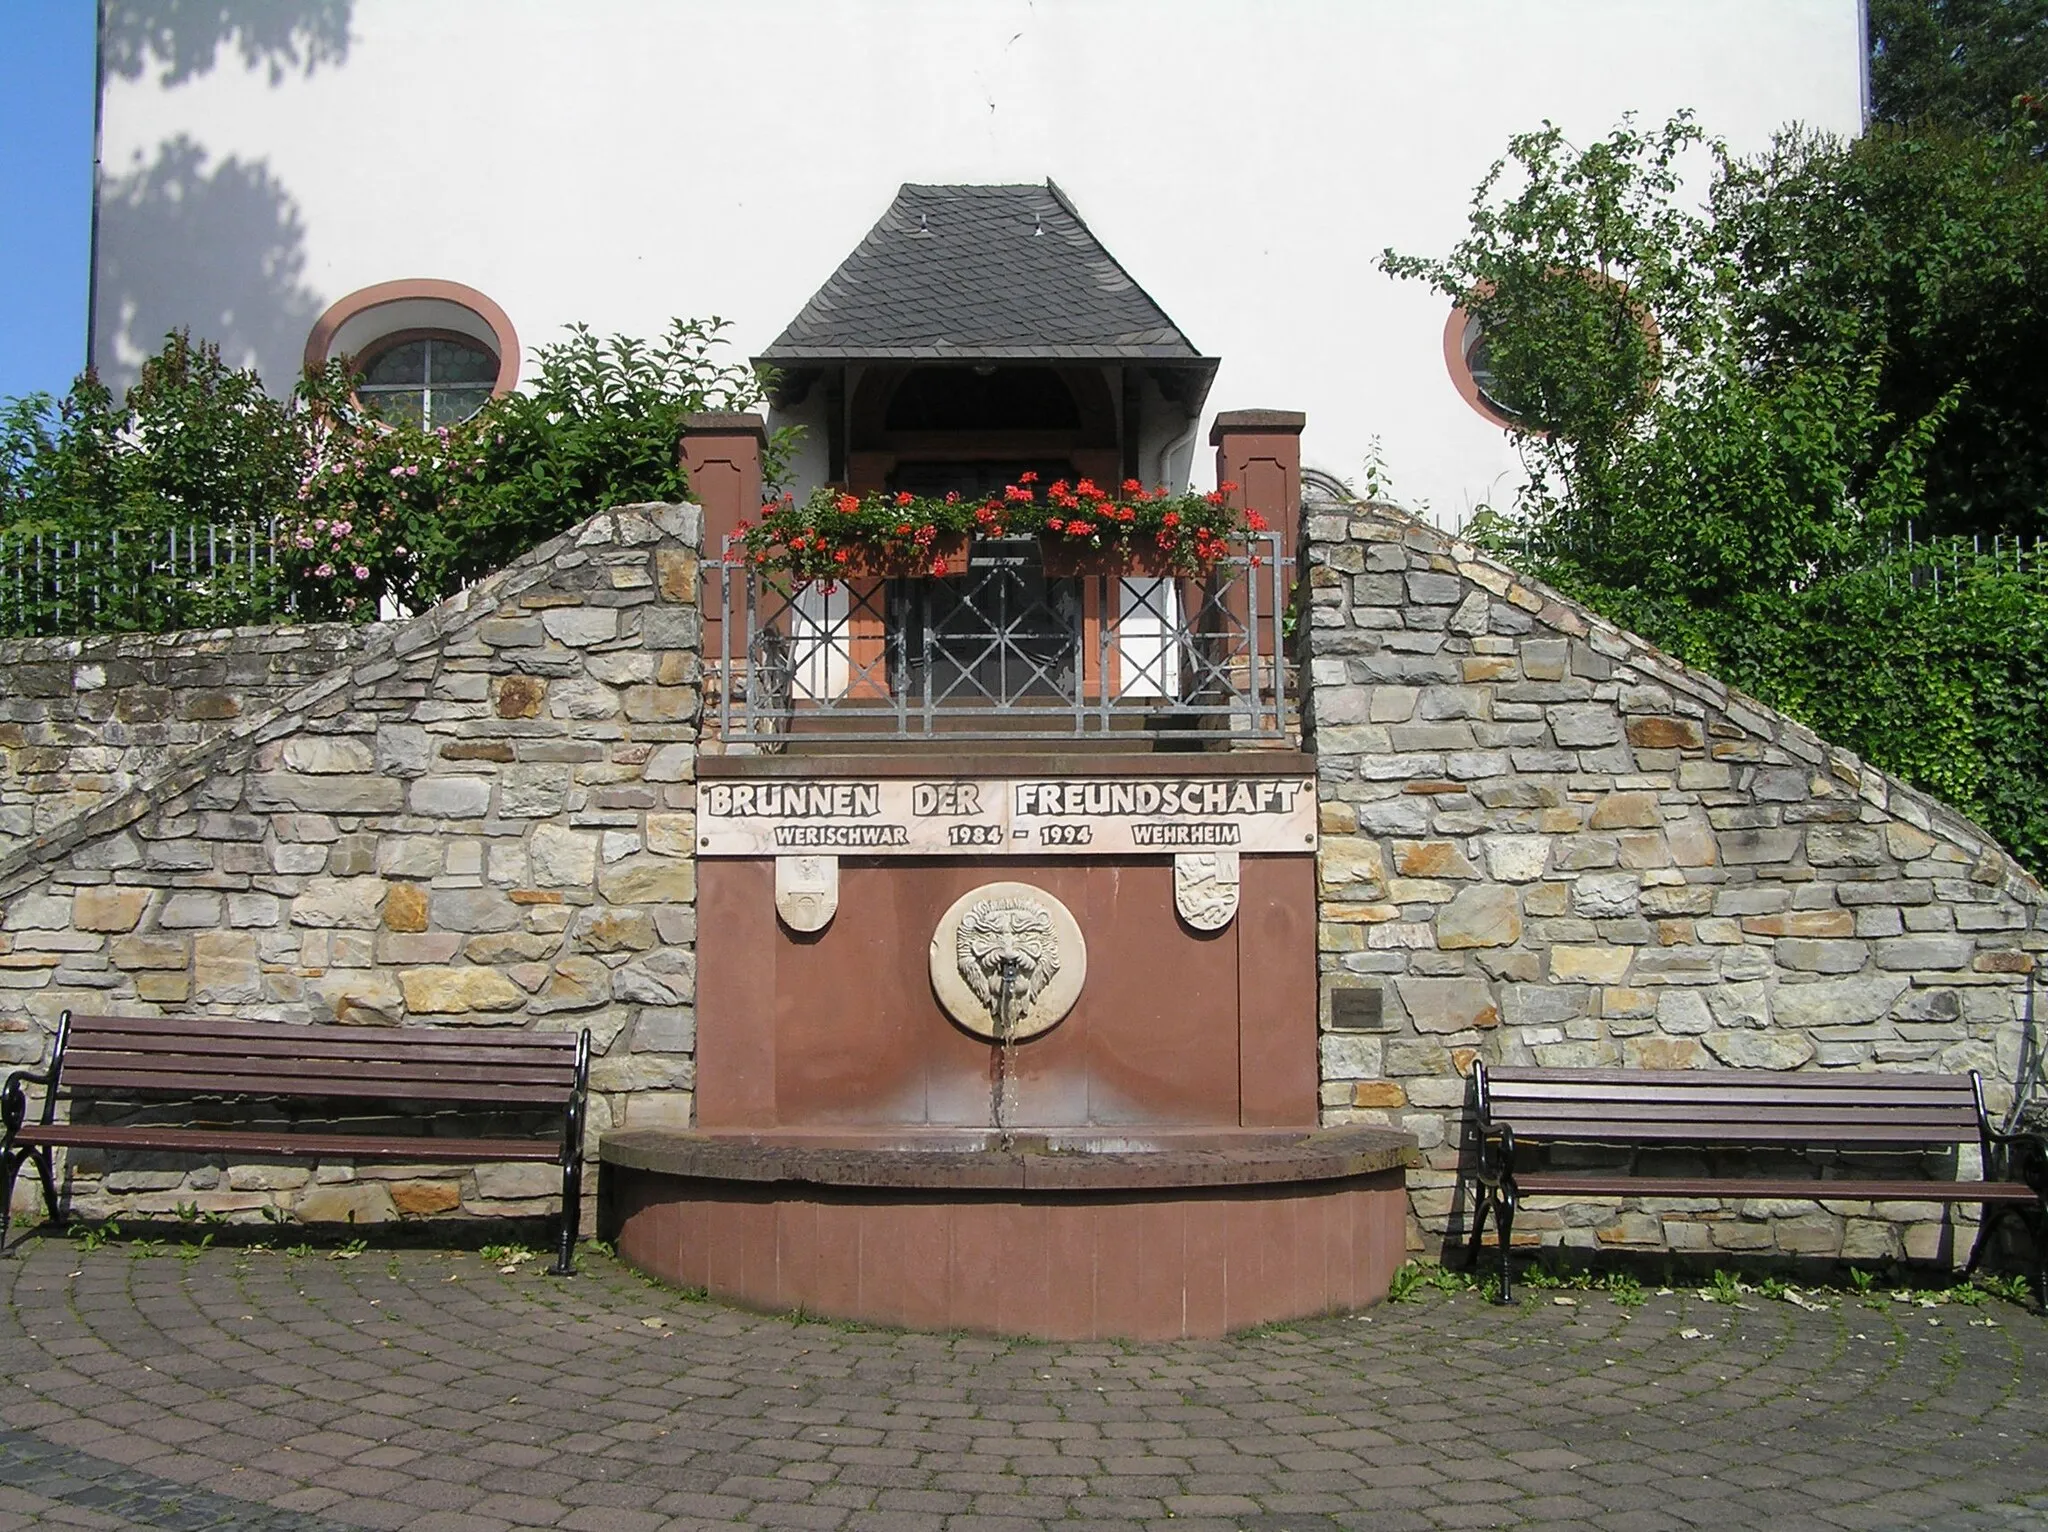 Photo showing: Wehrheim, Brunnen der Freundschaft, errichtet 1994 anläßlich des 10jährigen Jubiläums der Städtepartnerschaft mit Werischwar (ung:Pilisvörösvár). Der Brunnen befindet sich unterhalb der evangelischen Kirche neben dem Rathaus.